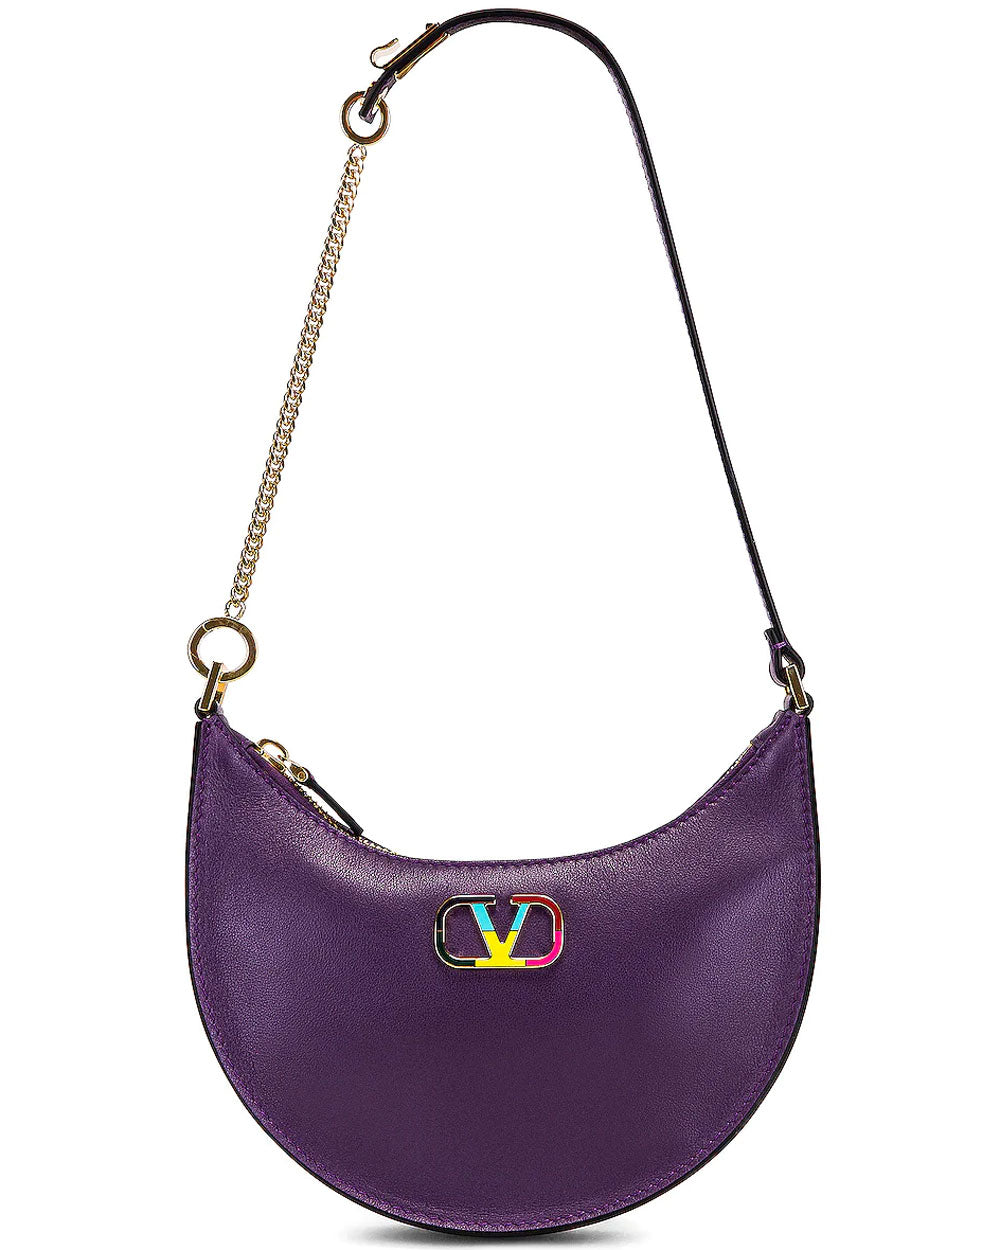 Mini Hobo Bag in Indian Violet